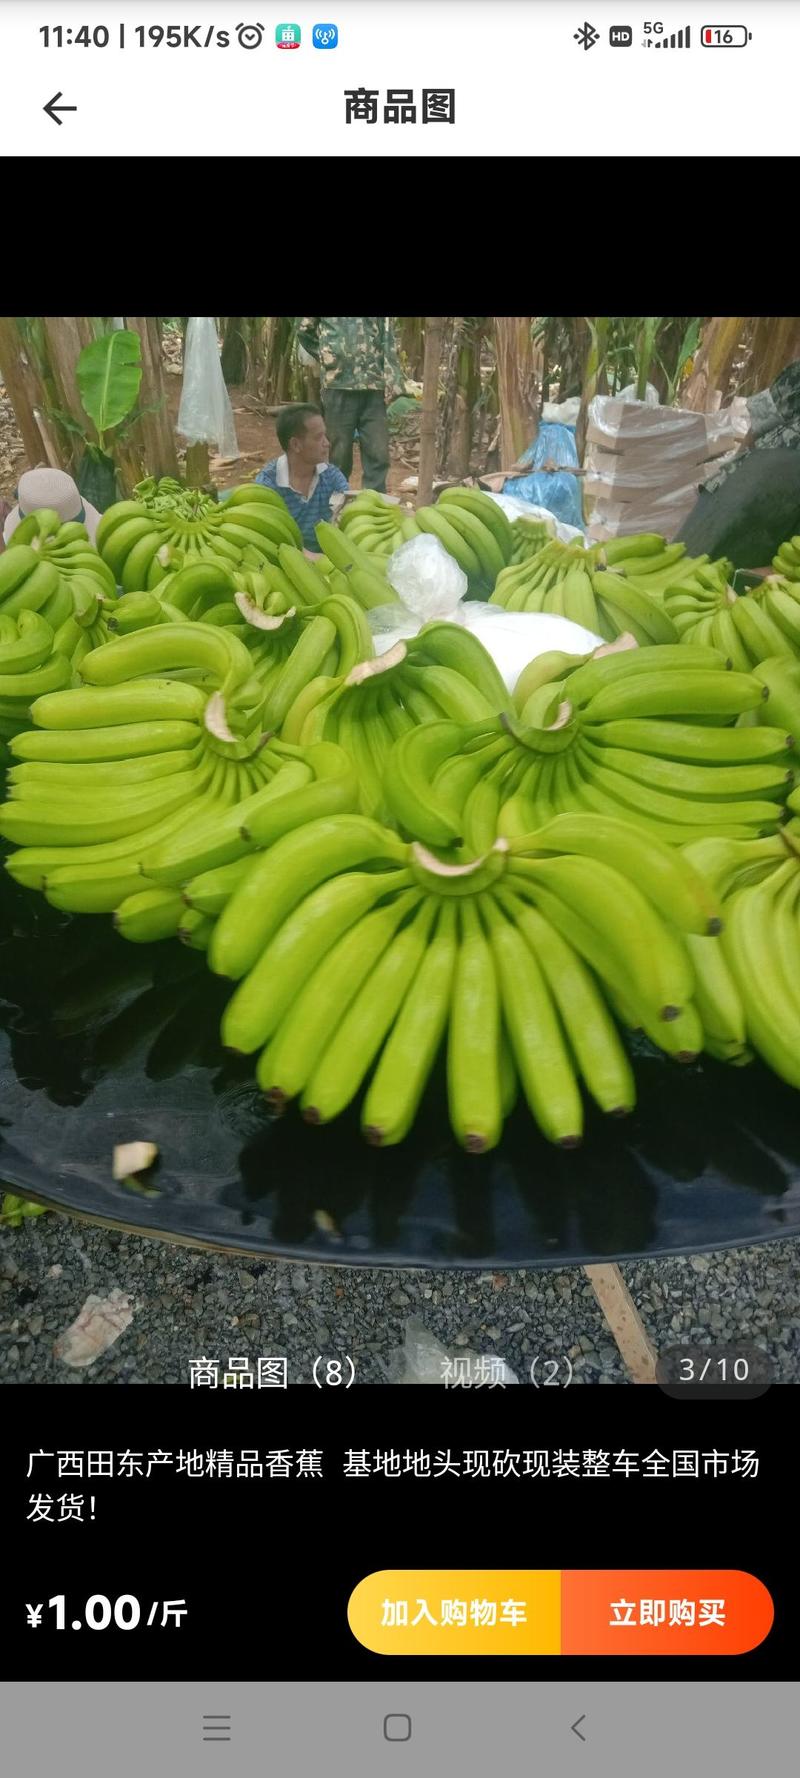 香蕉常年供应香蕉————————————